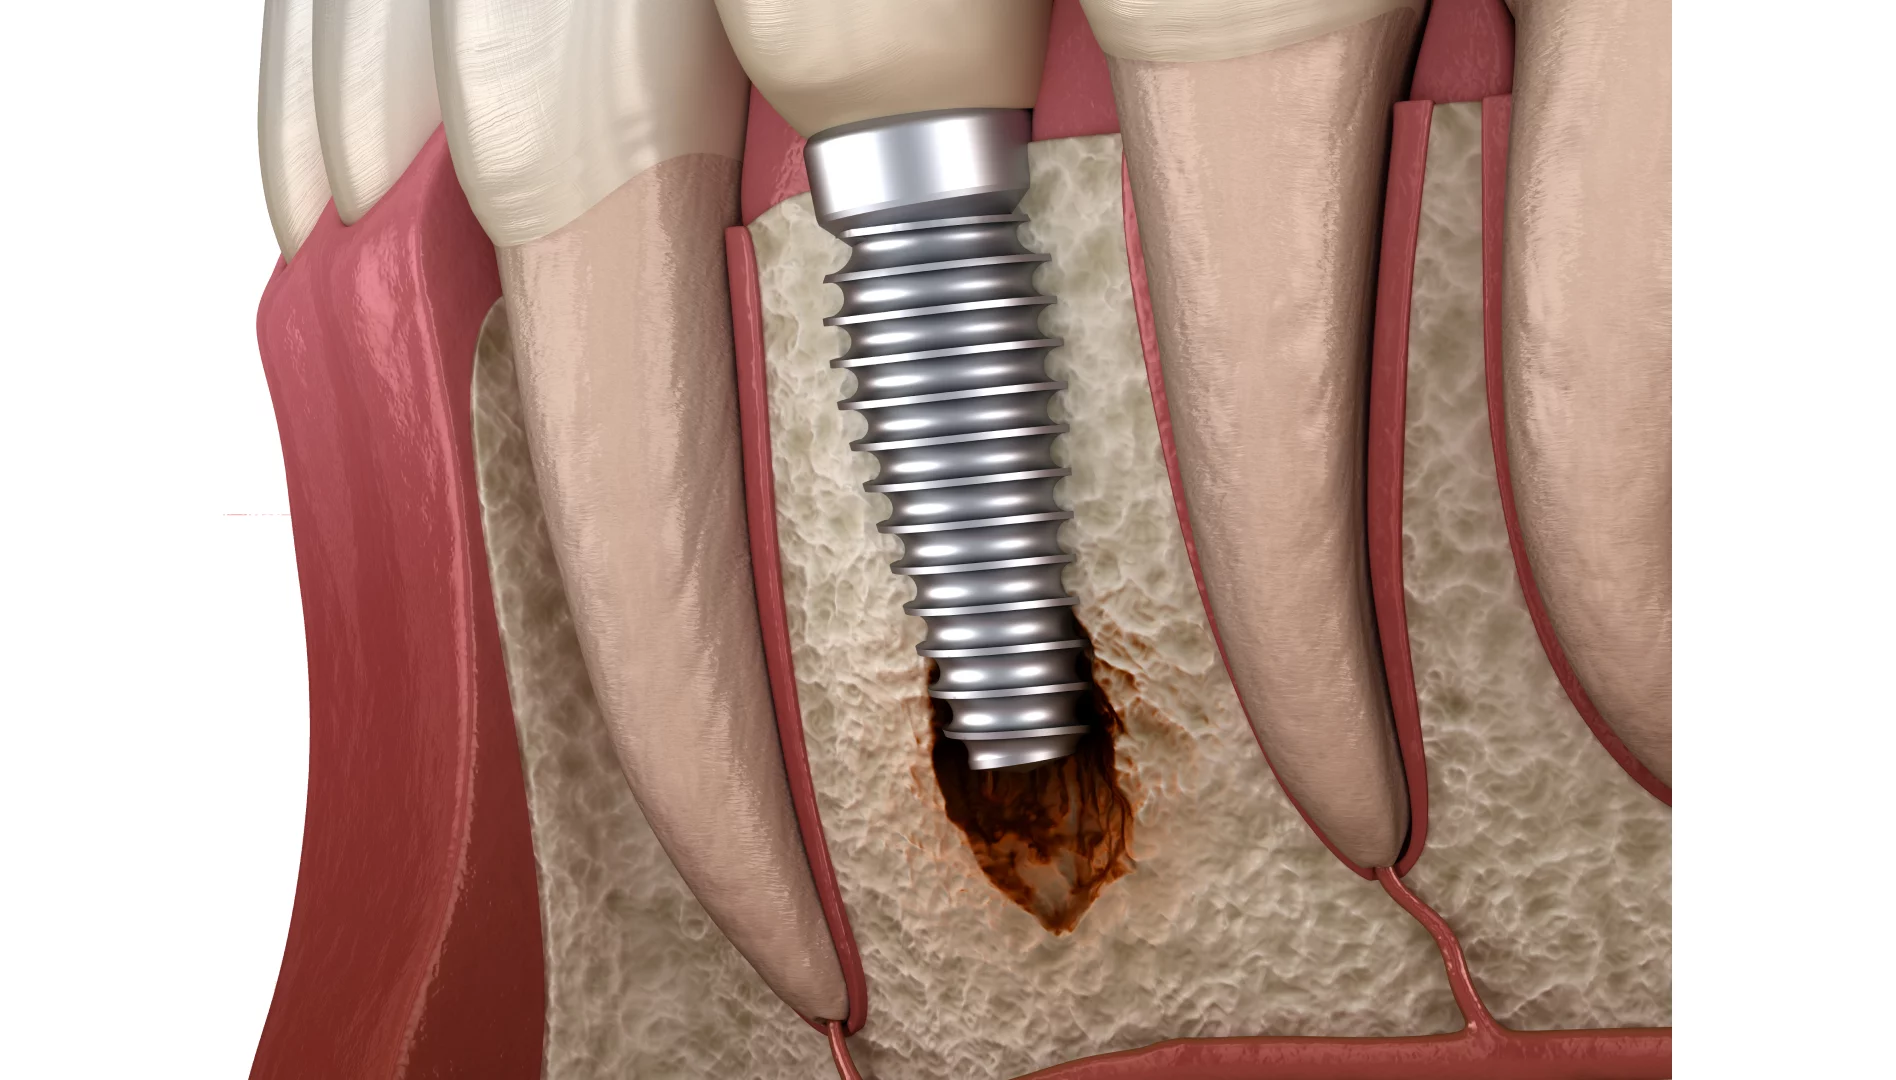 Відторгнення зубного імпланту